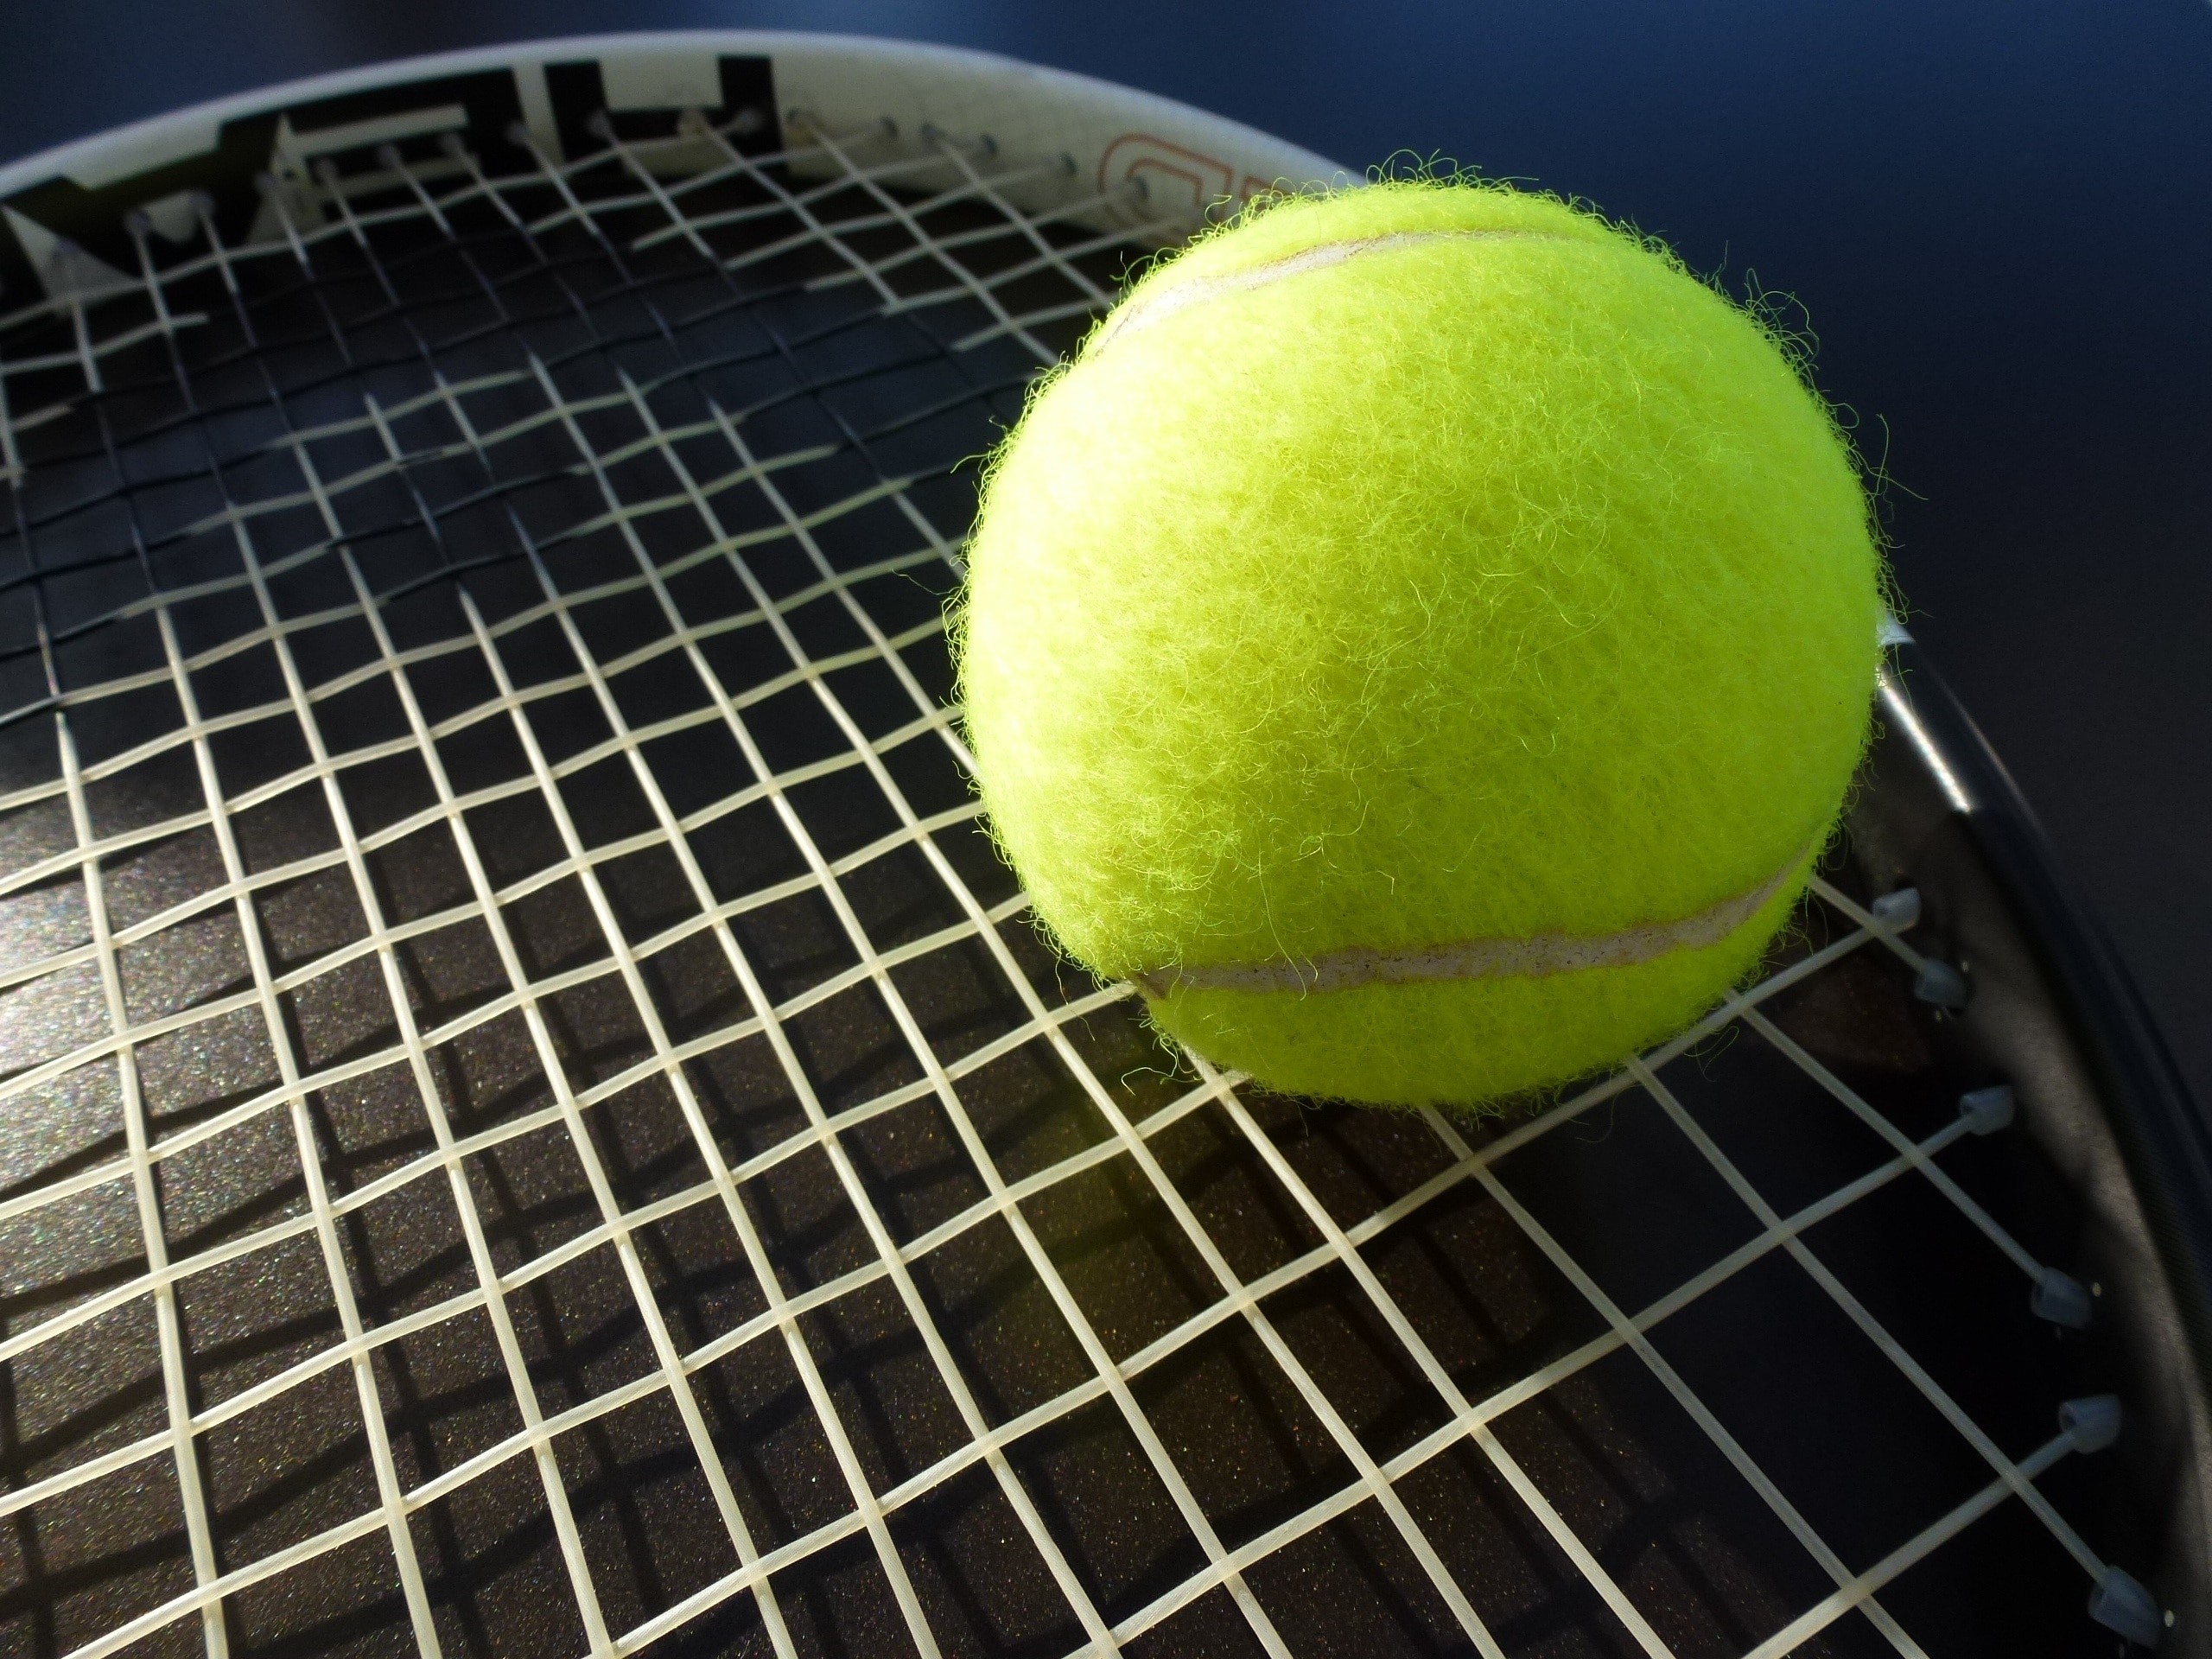 Теннисные обзоры. Теннисный мяч Tennis. Теннисный мяч Уимблдон. Теннис корт ракетка мяч. Теннисный мяч на корте.